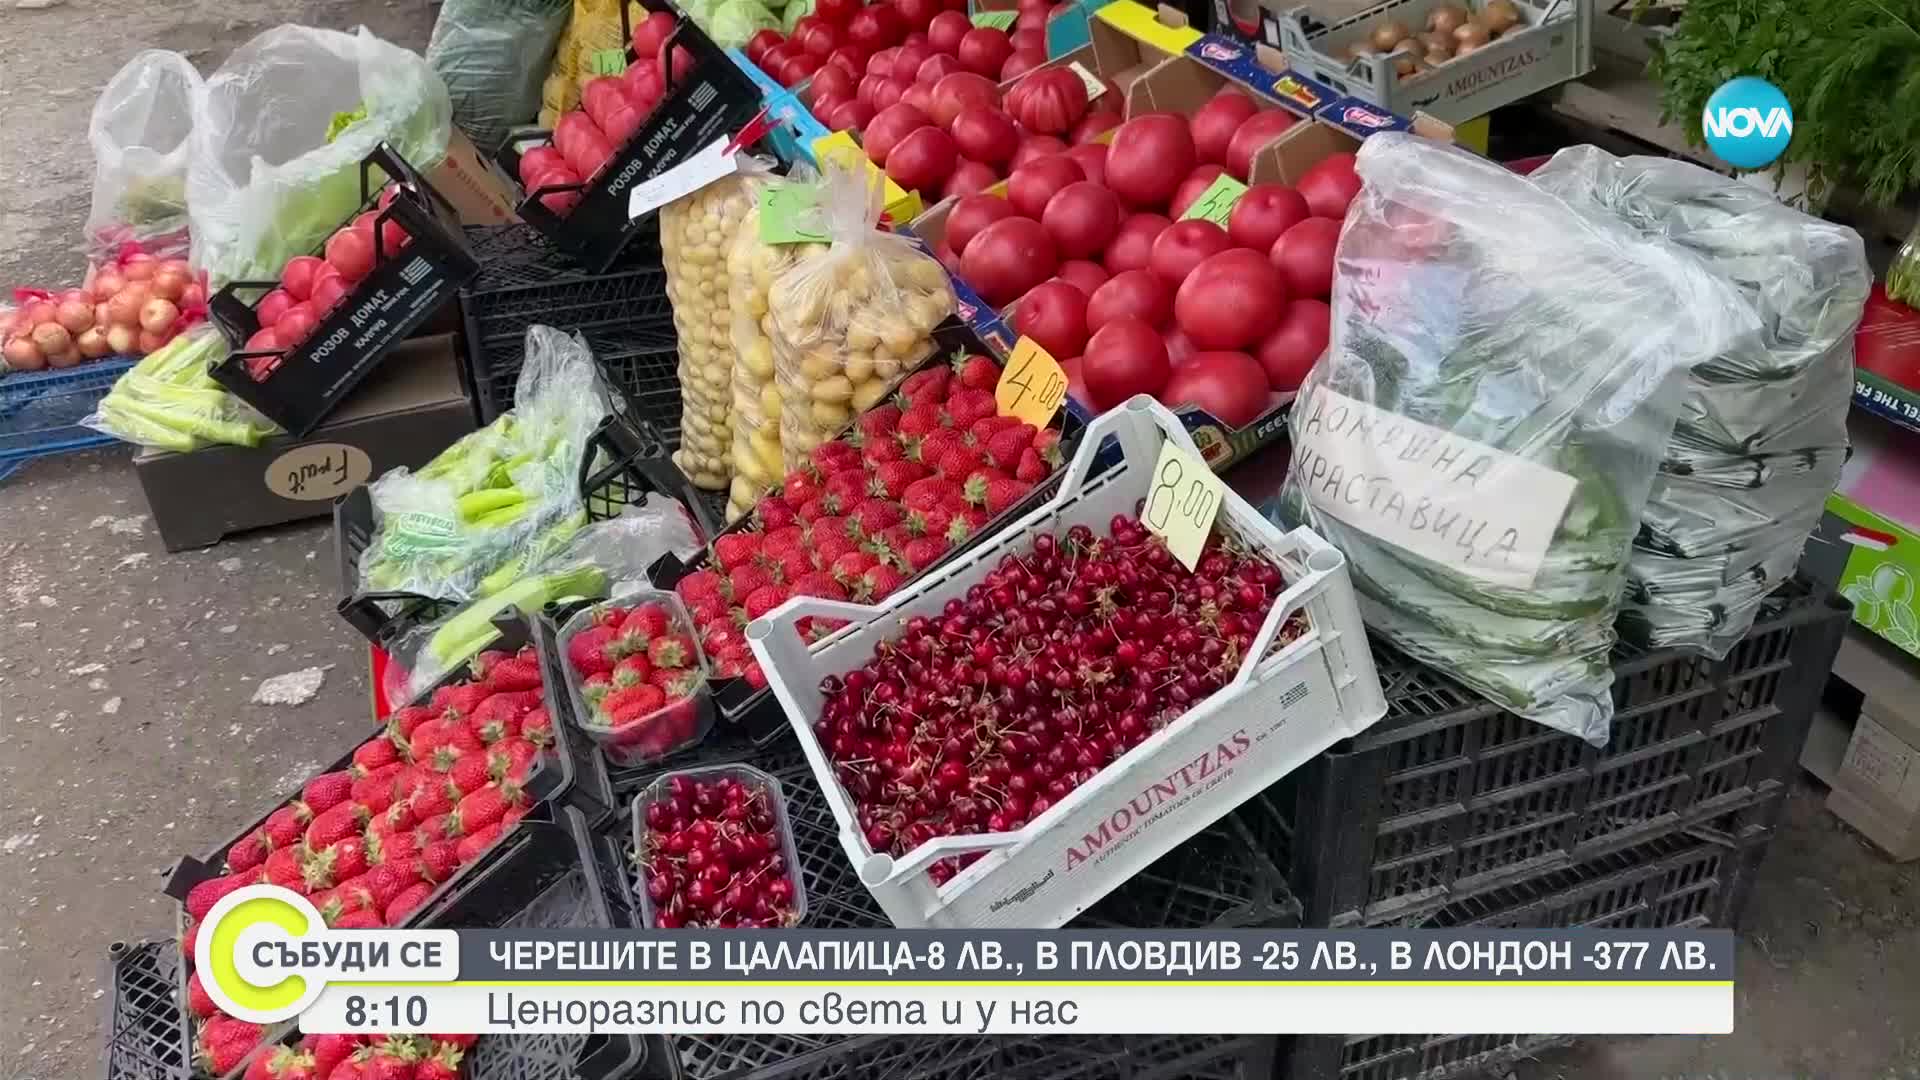 Цената на черешите в Цалапица, Пловдив и Лондон: Плодът става все по-скъп